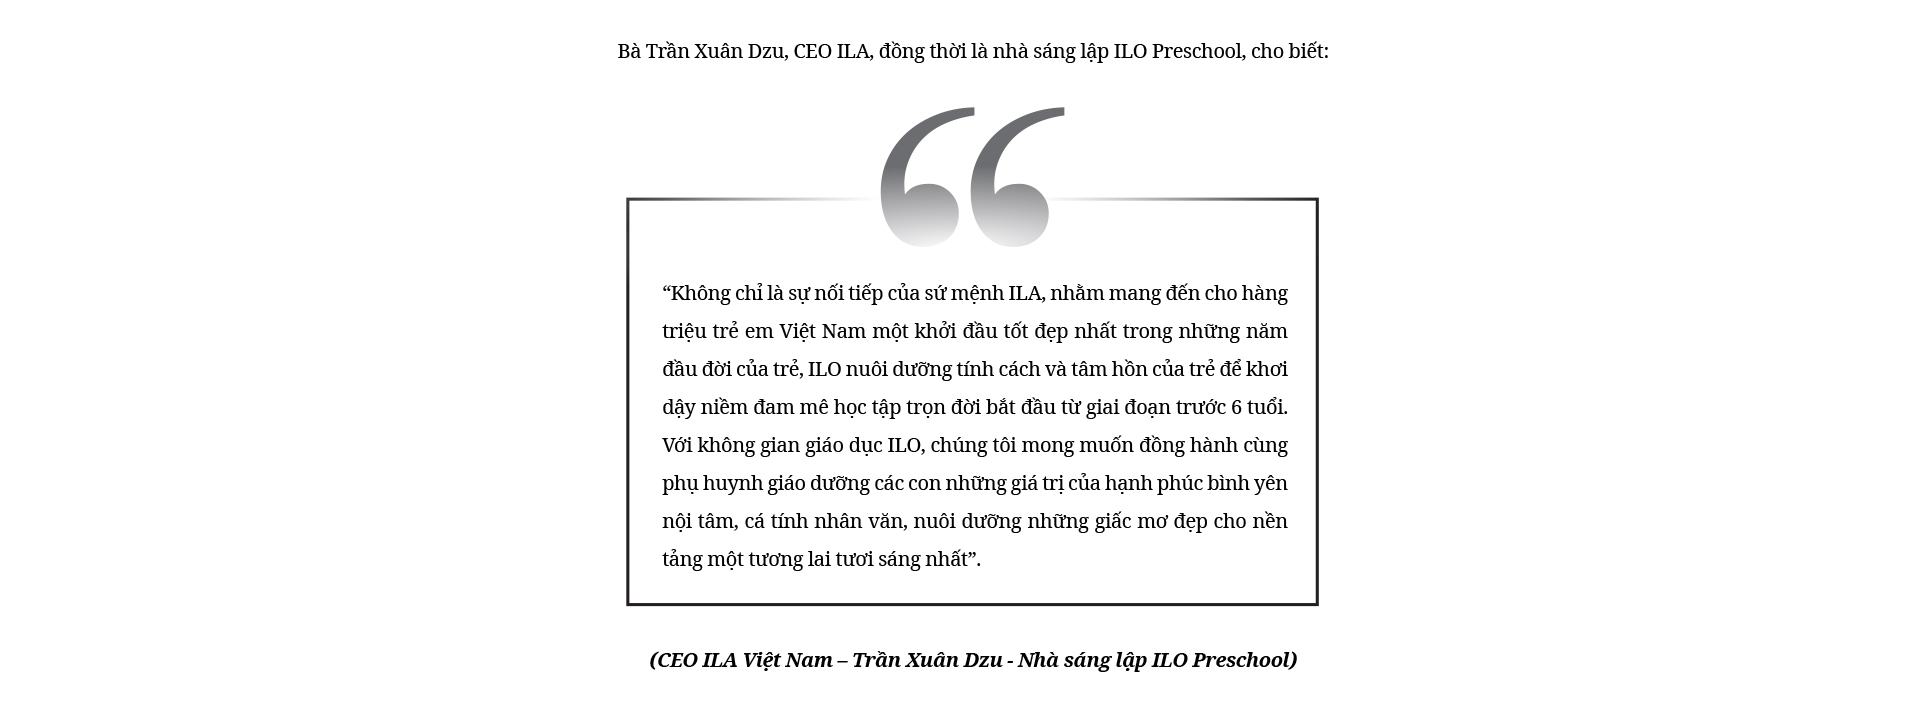 CEO ILA Trần Xuân Dzu: Từ công việc bán thời gian đến tâm huyết trọn đời cho giáo dục - Ảnh 13.